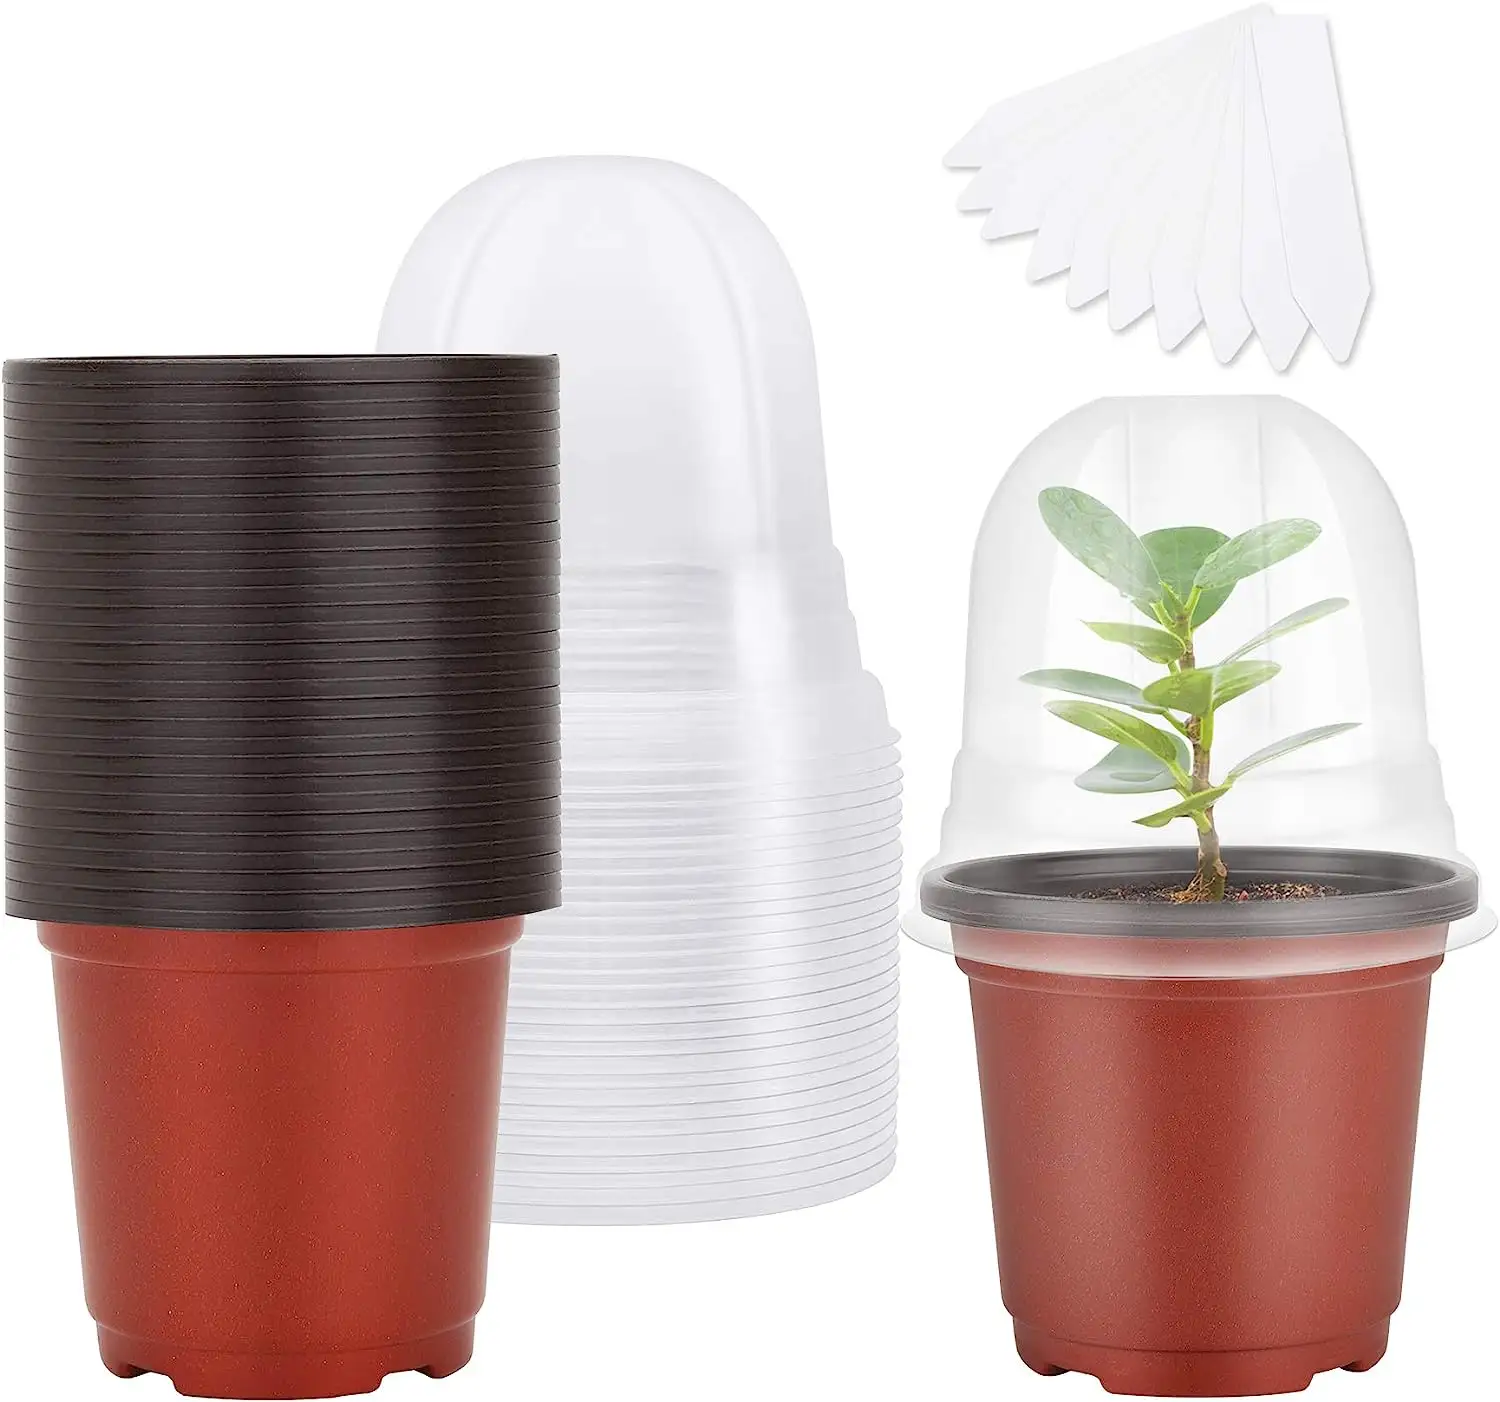 Vasi da vivaio da 6 pollici, vasi di plastica per piante con fori di drenaggio, vasi per piantine per fiori, piante da interno ed esterni